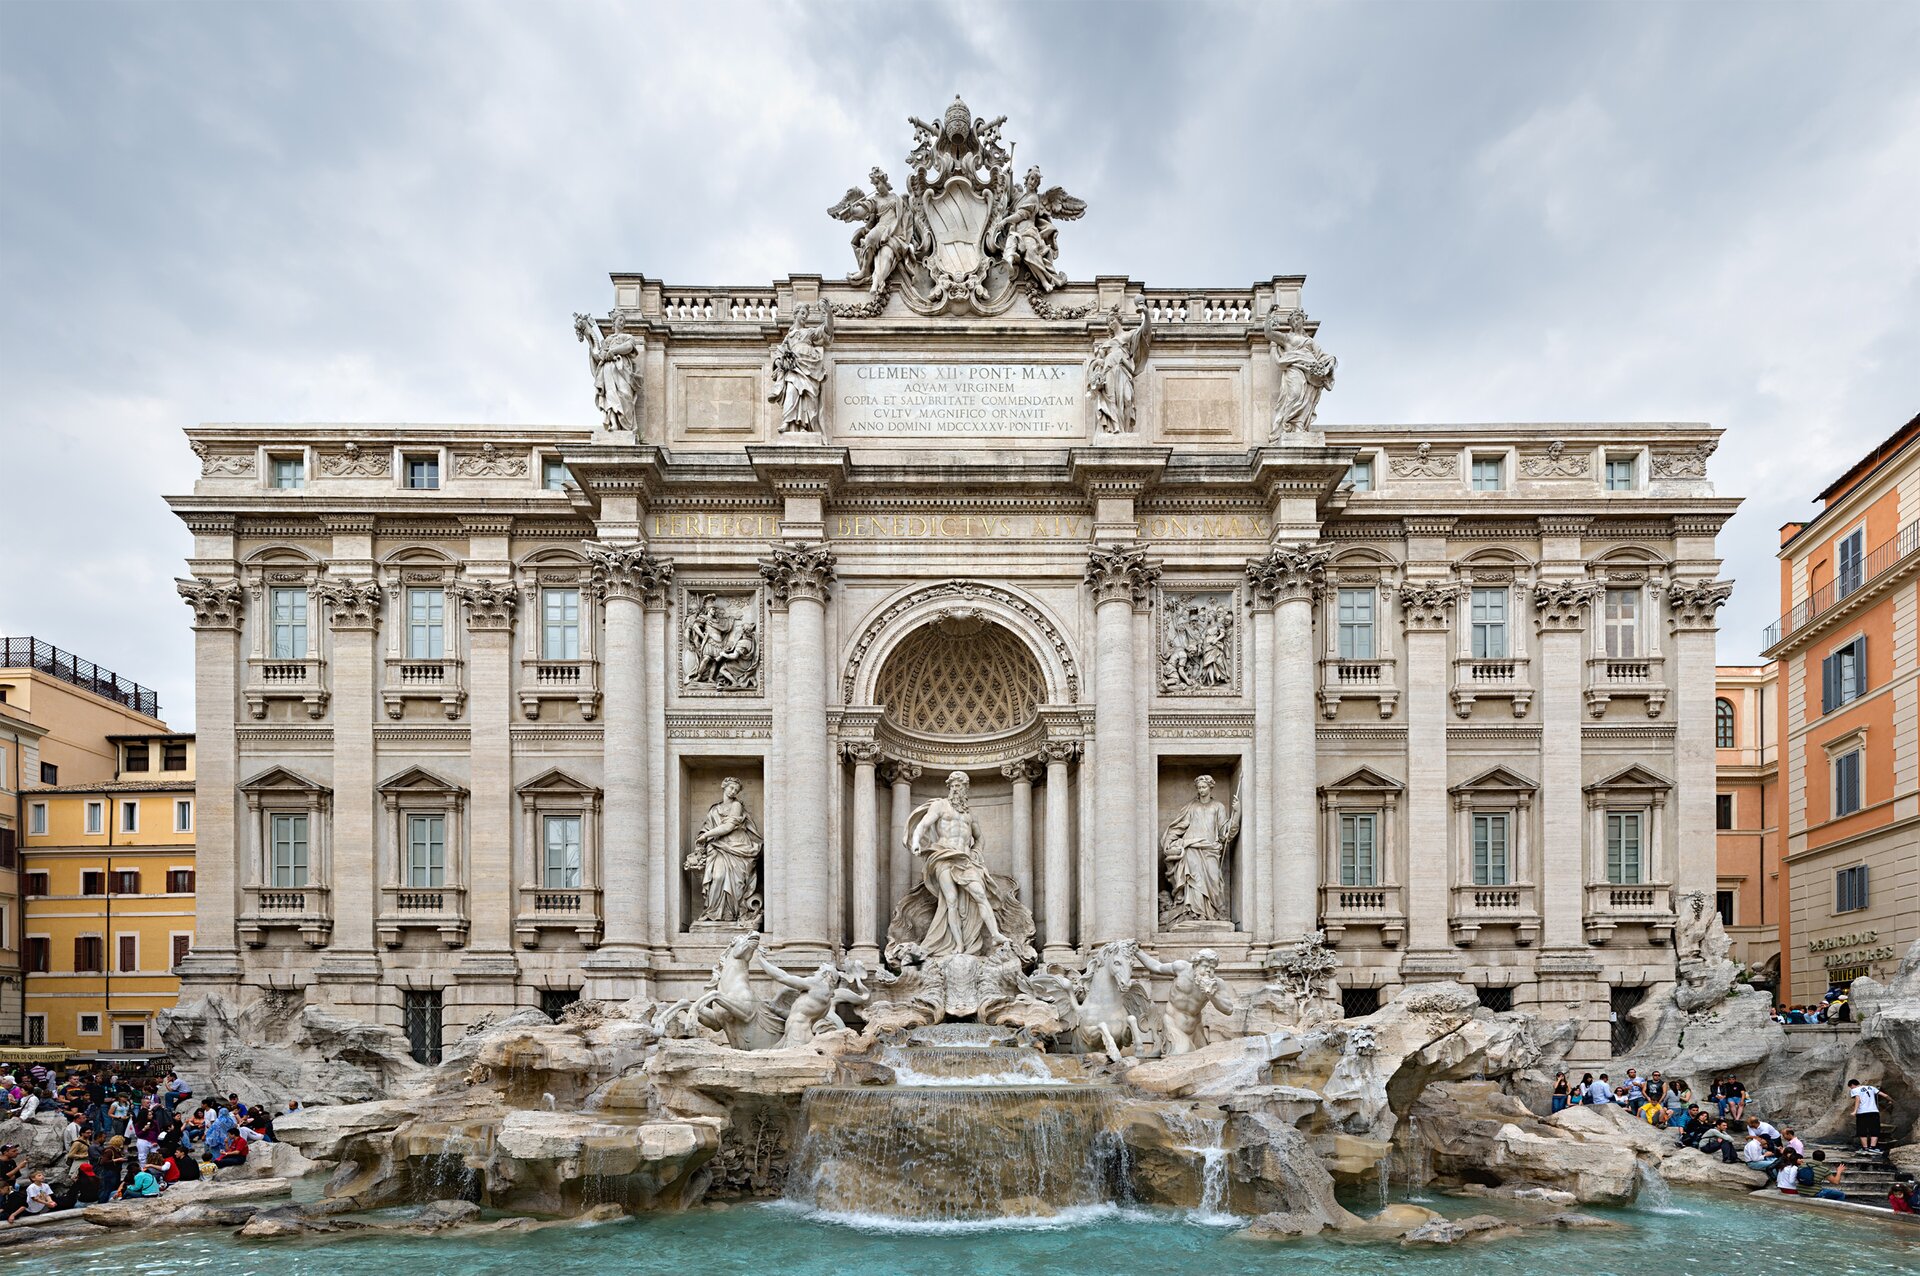 Rzymska Fontanna di Trevi – najsłynniejsza barokowa fontanna w stolicy Włoch Rzymska Fontanna di Trevi – najsłynniejsza barokowa fontanna w stolicy Włoch Źródło: Diliff, licencja: CC BY 3.0.